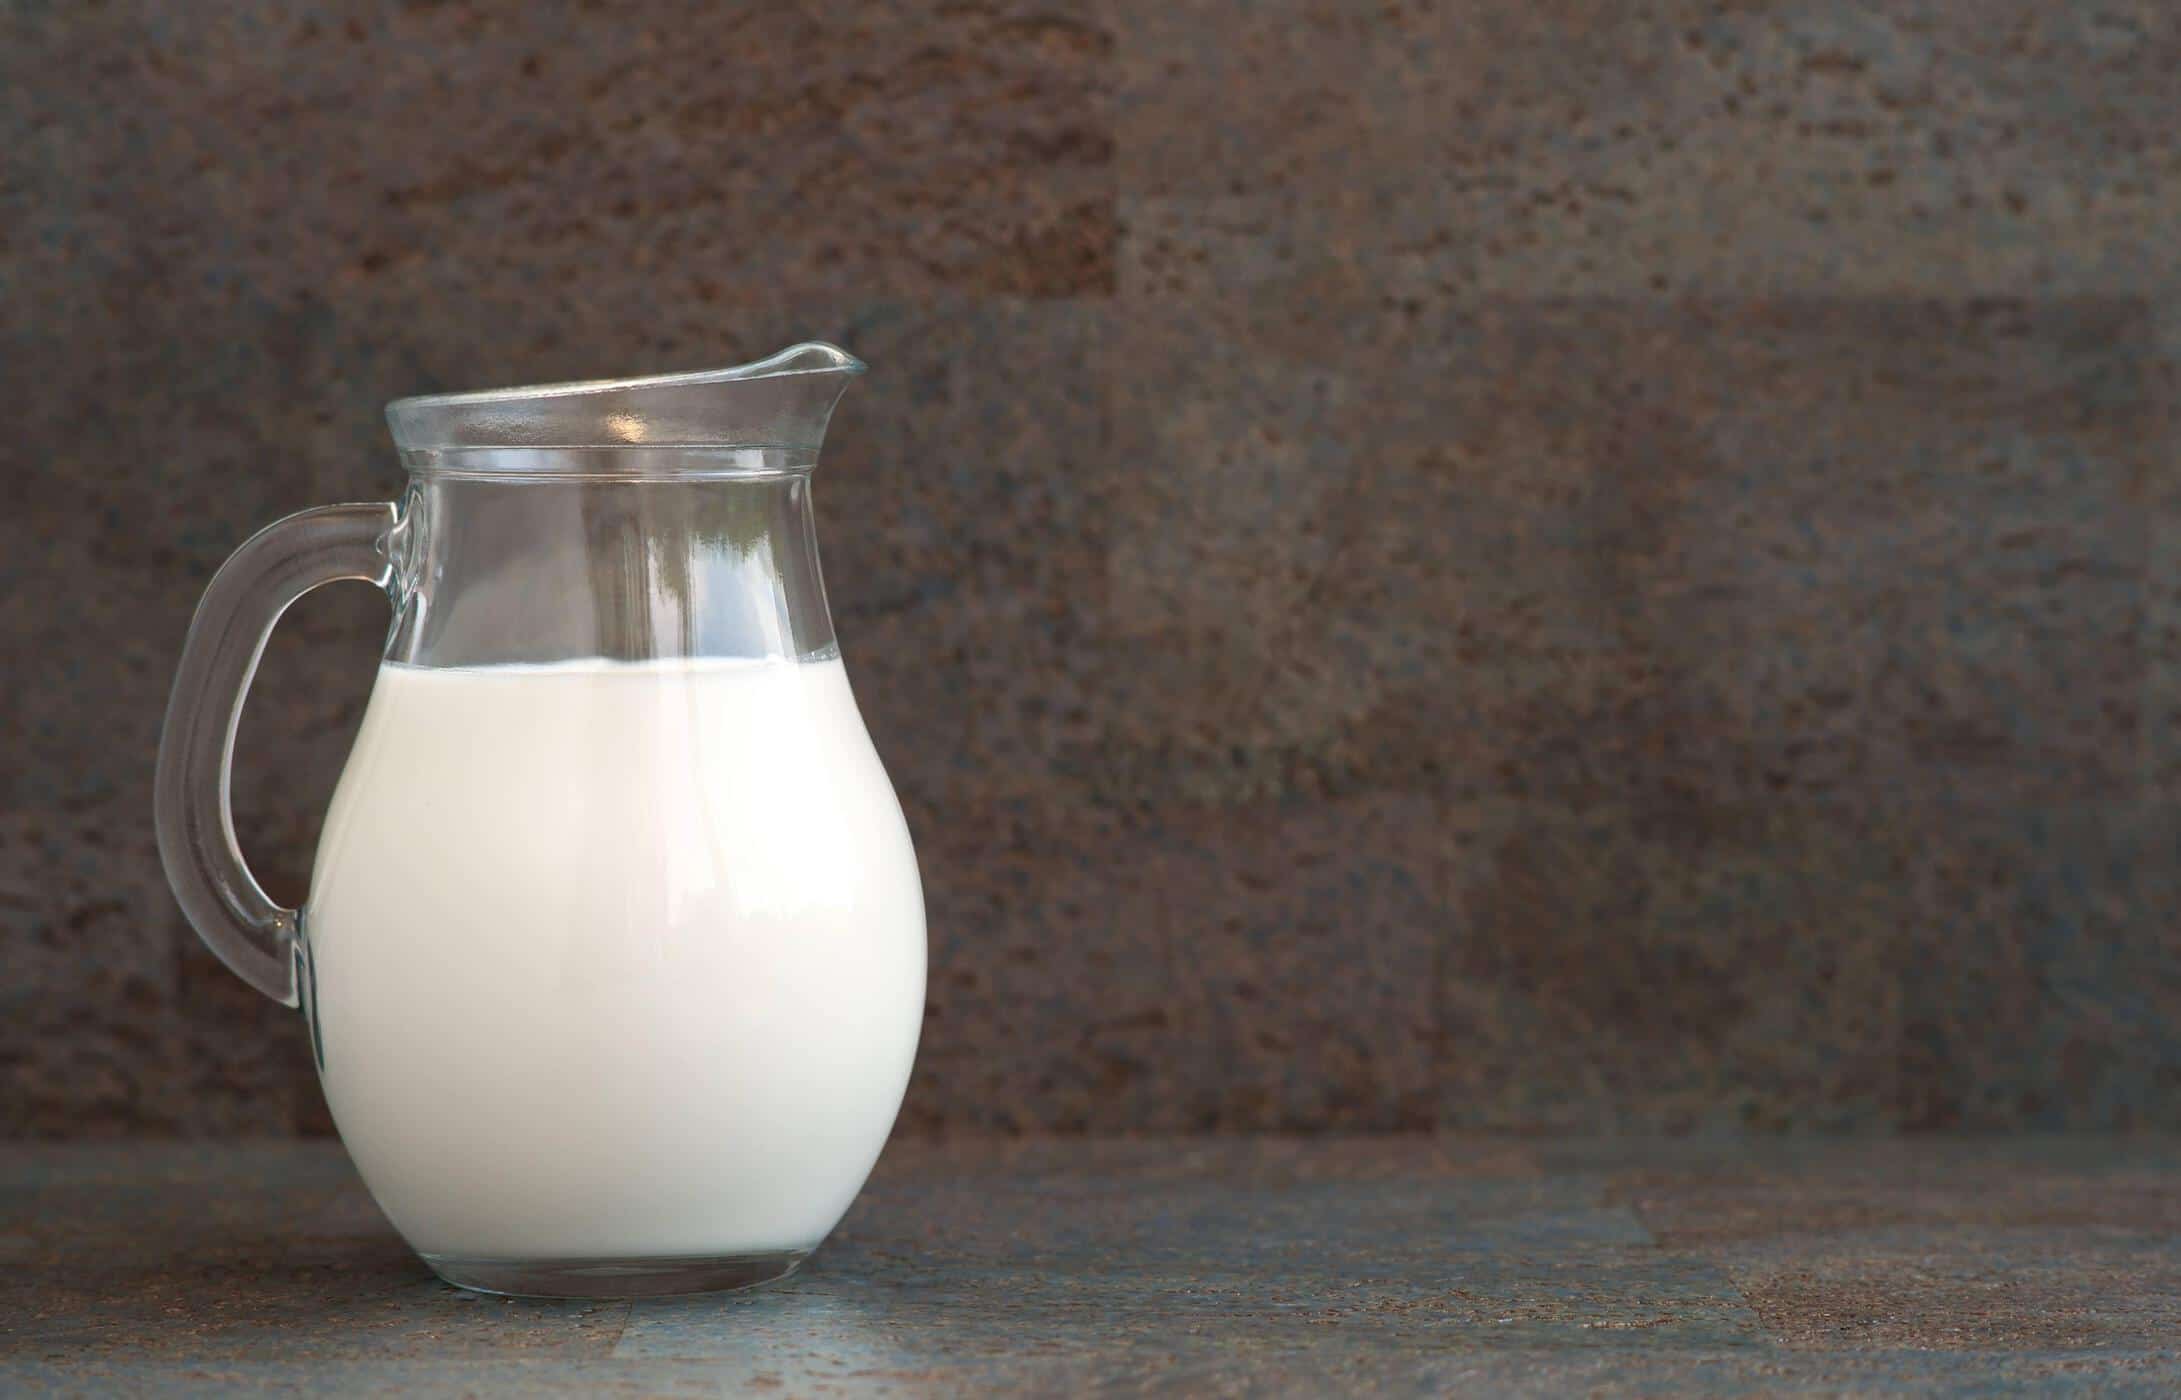 Varie sul latte a basso contenuto di lattosio